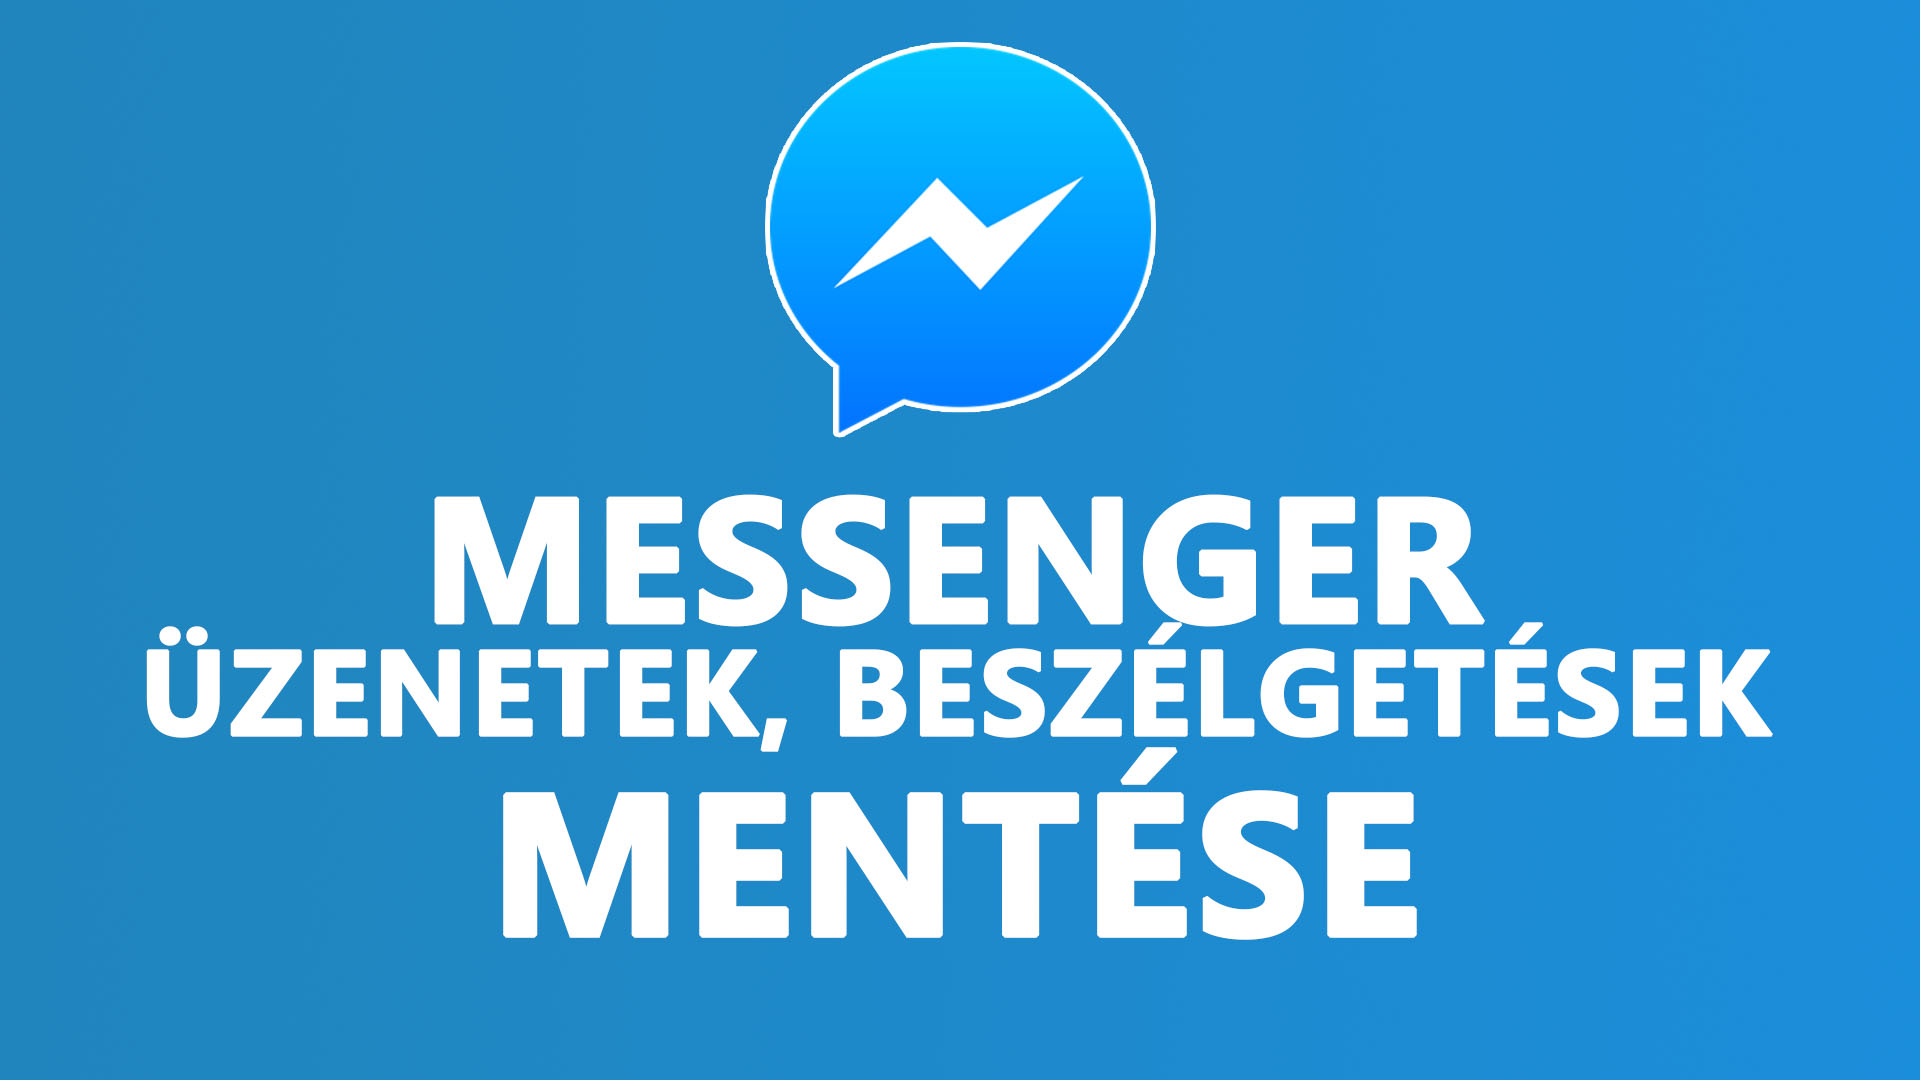 Messenger üzenetek, beszélgetések mentése